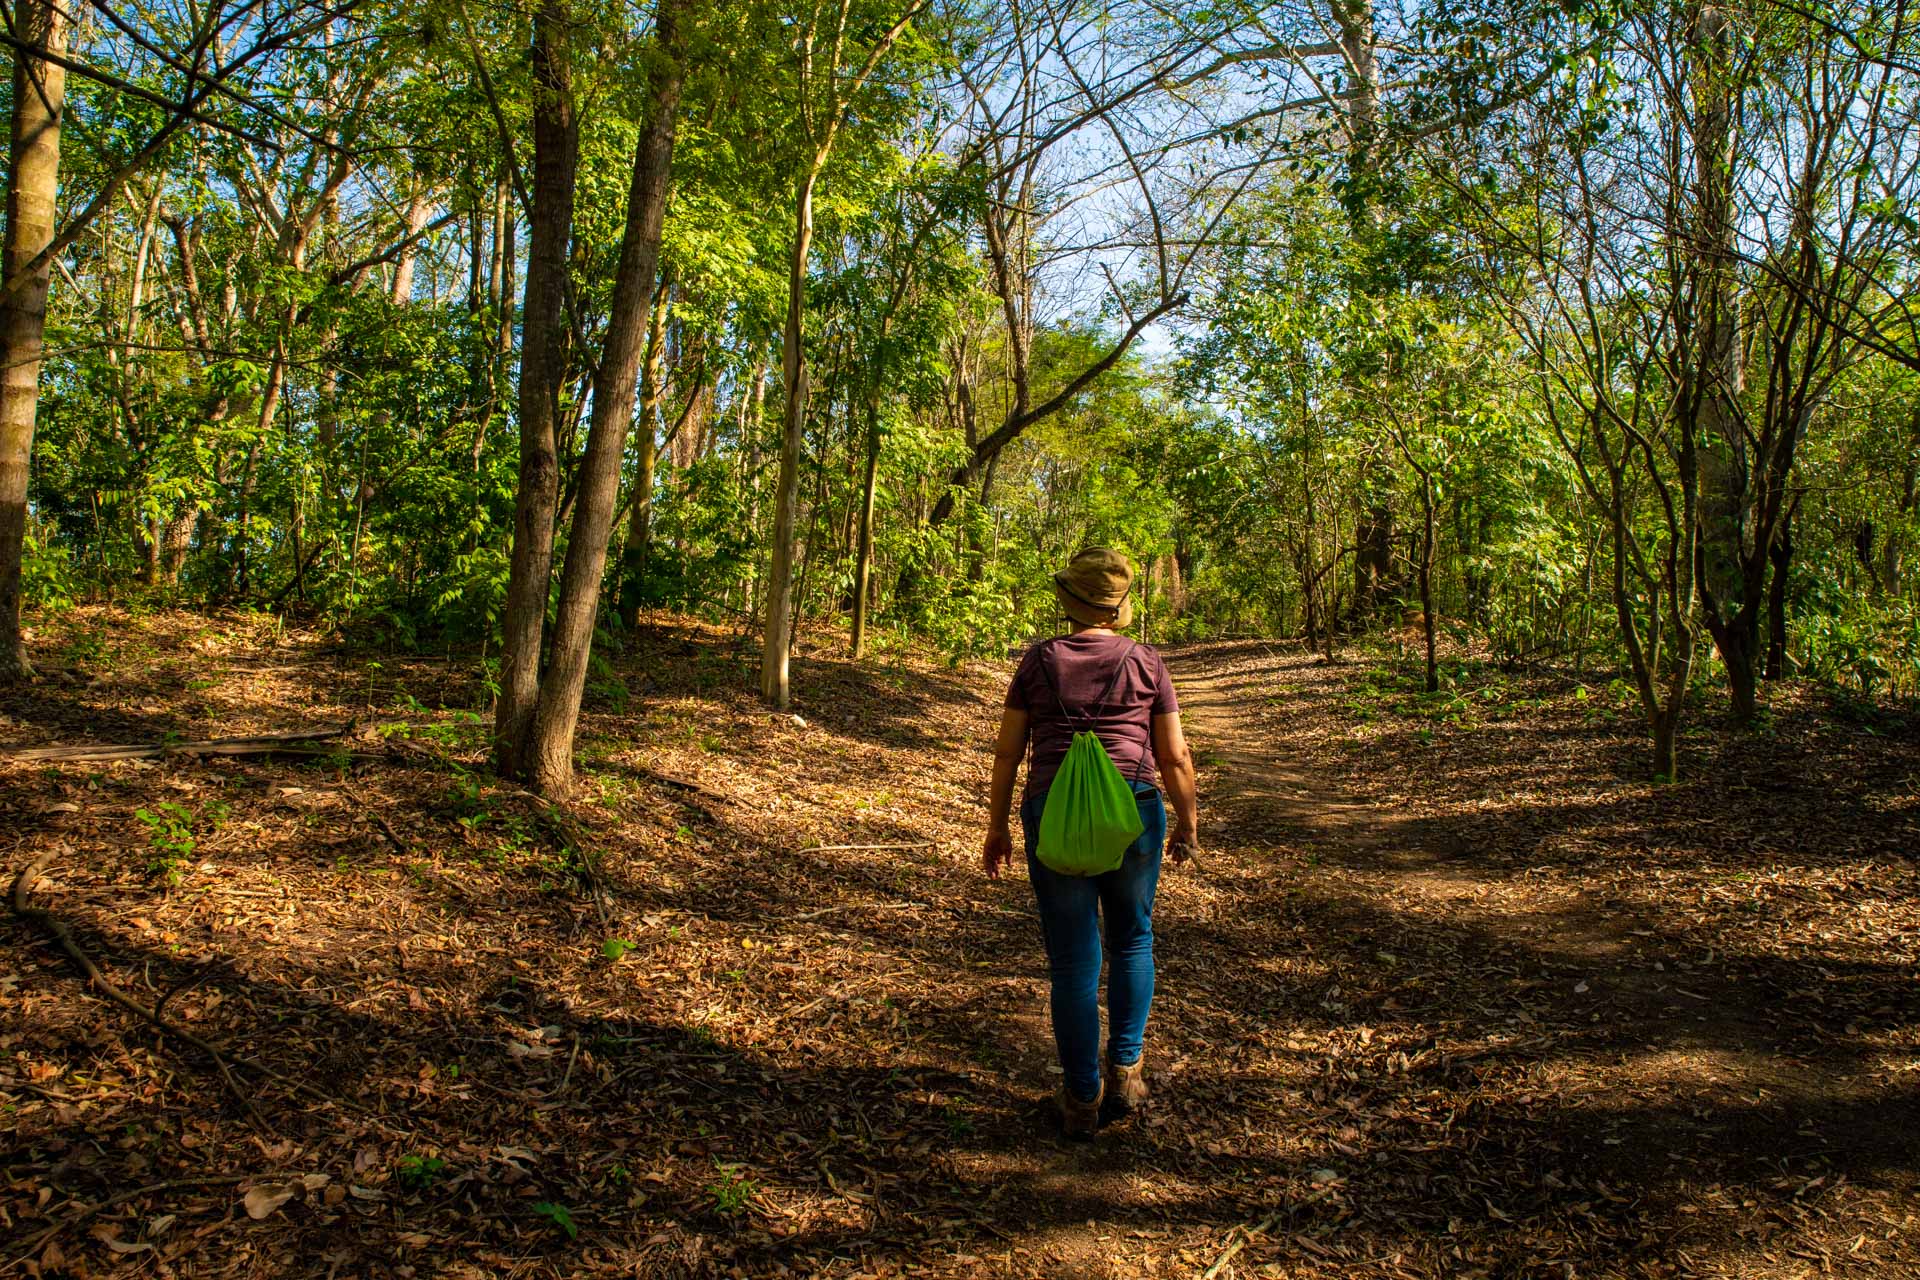 Fotografia de uma mulher de costas caminhando em um parque. O chão é de terra e existem muitas árvores.